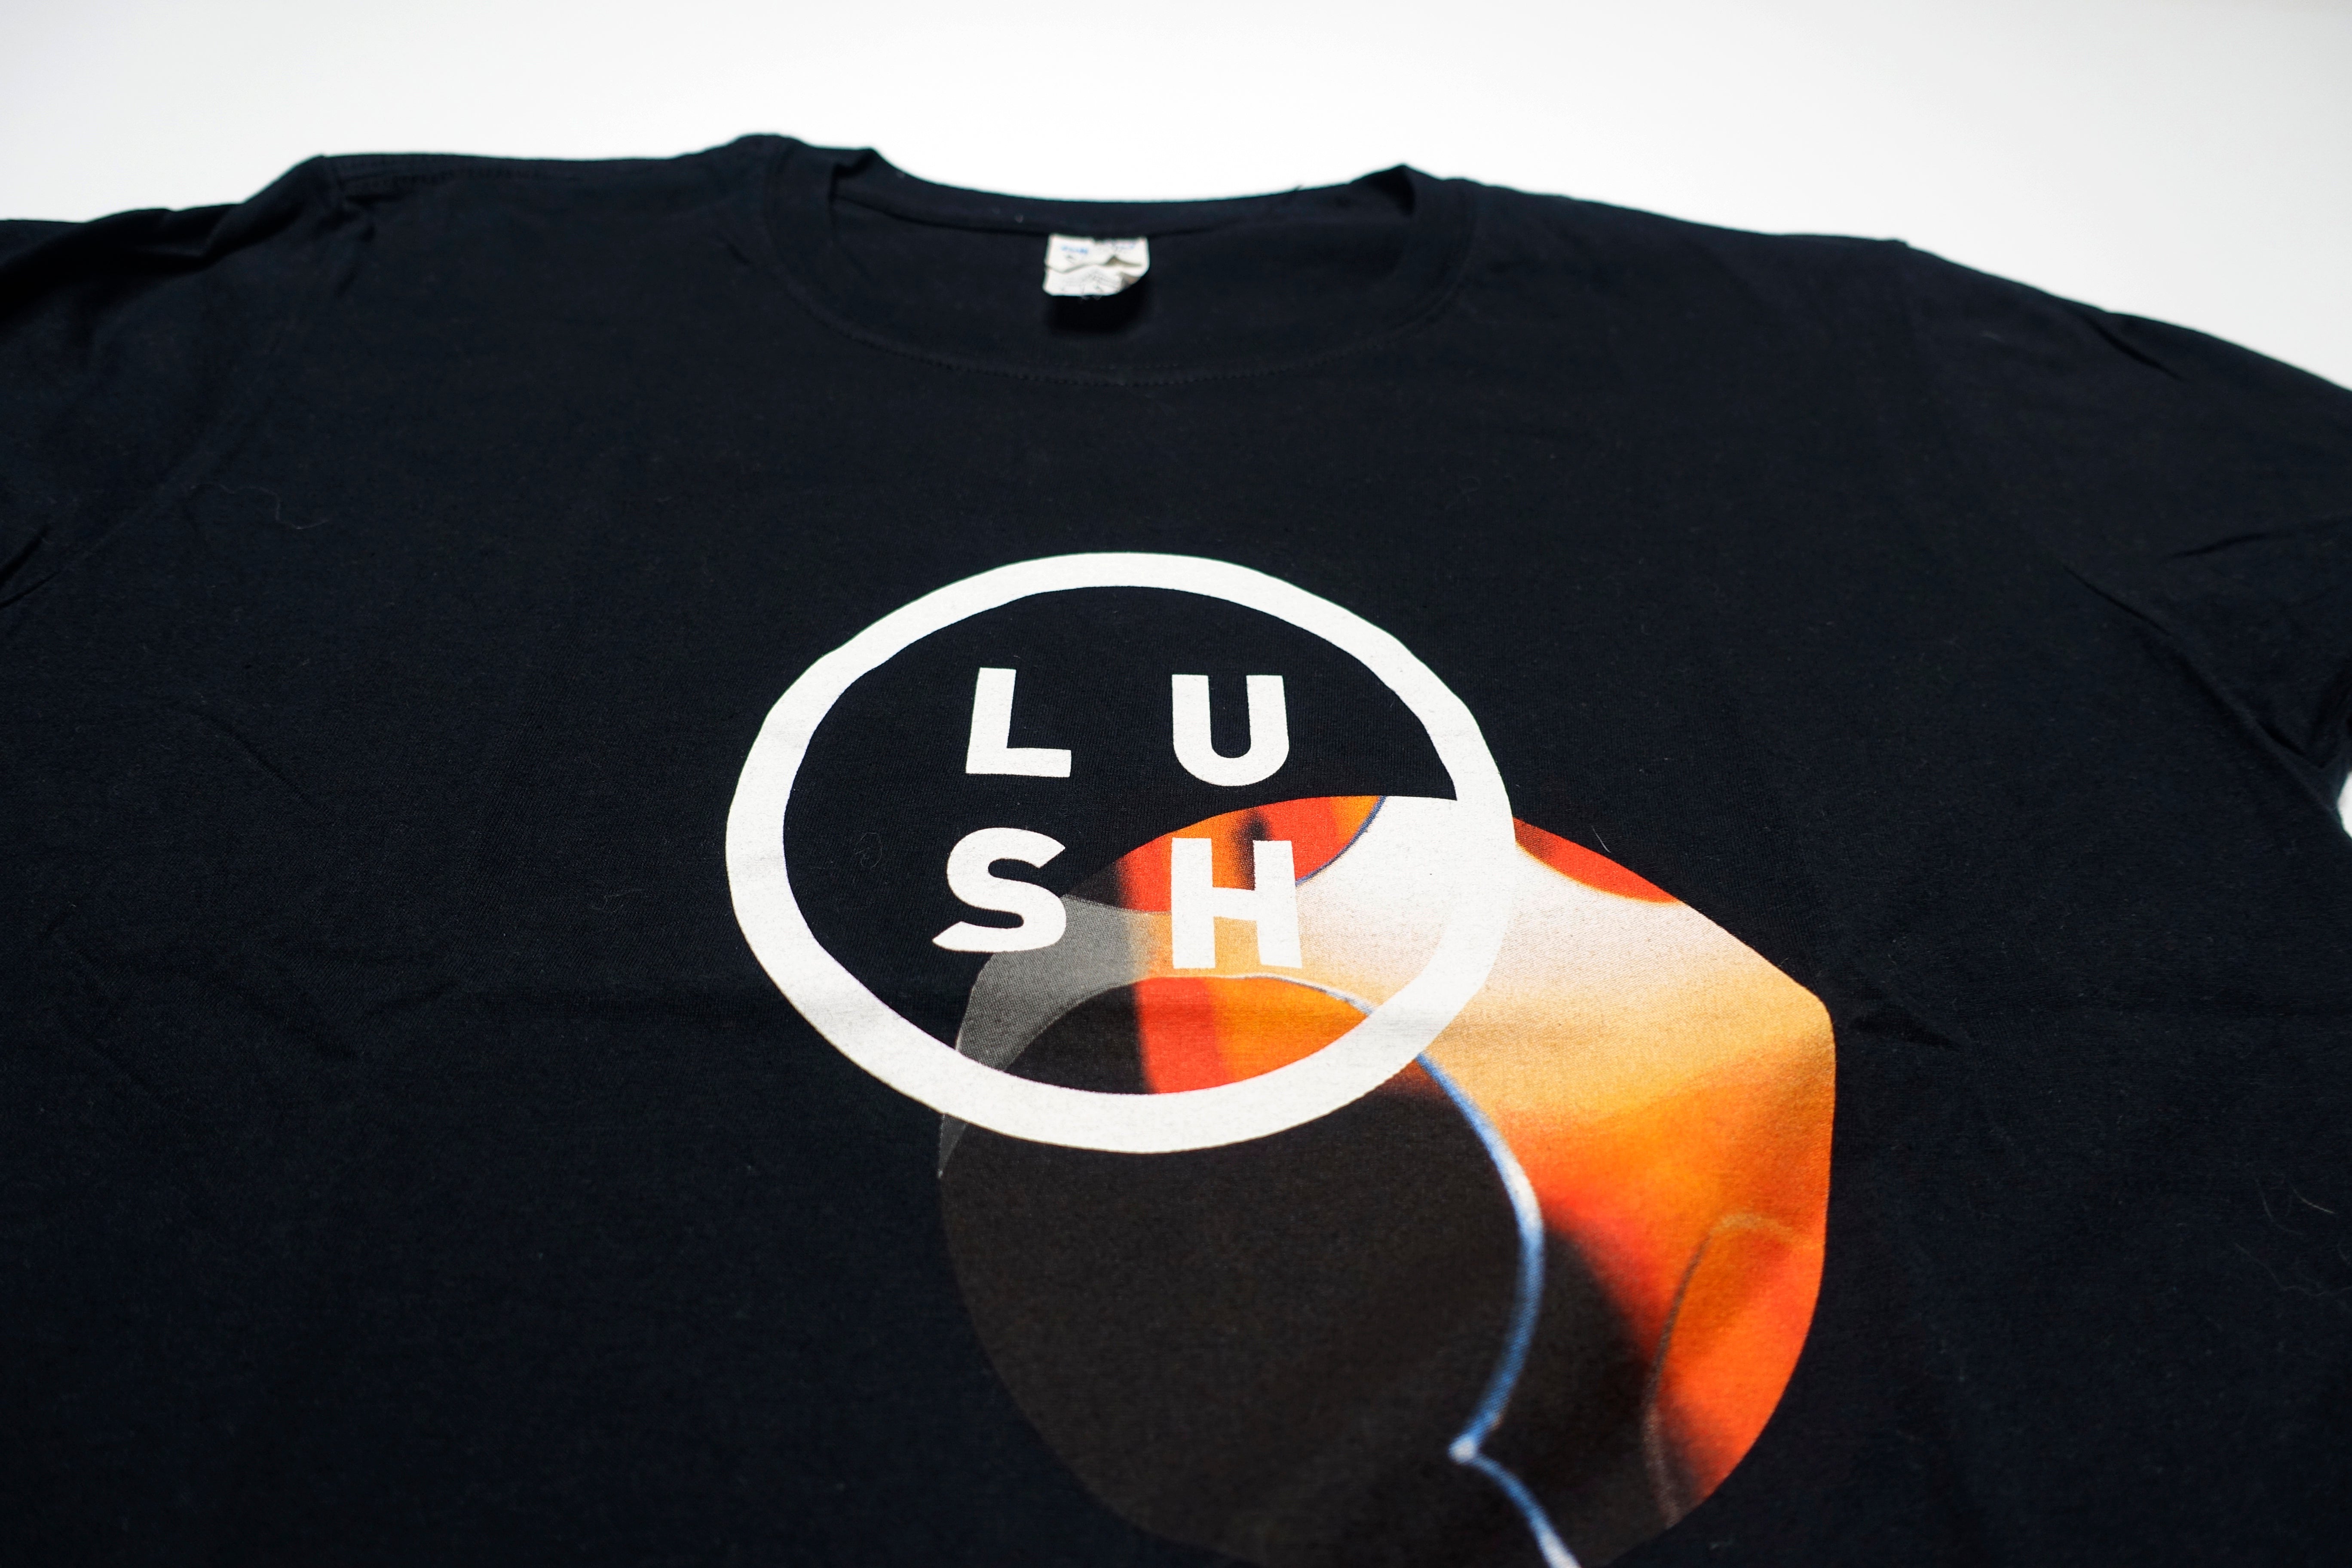 Lush - Blind Spot 2016 Tour Shirt Size Large